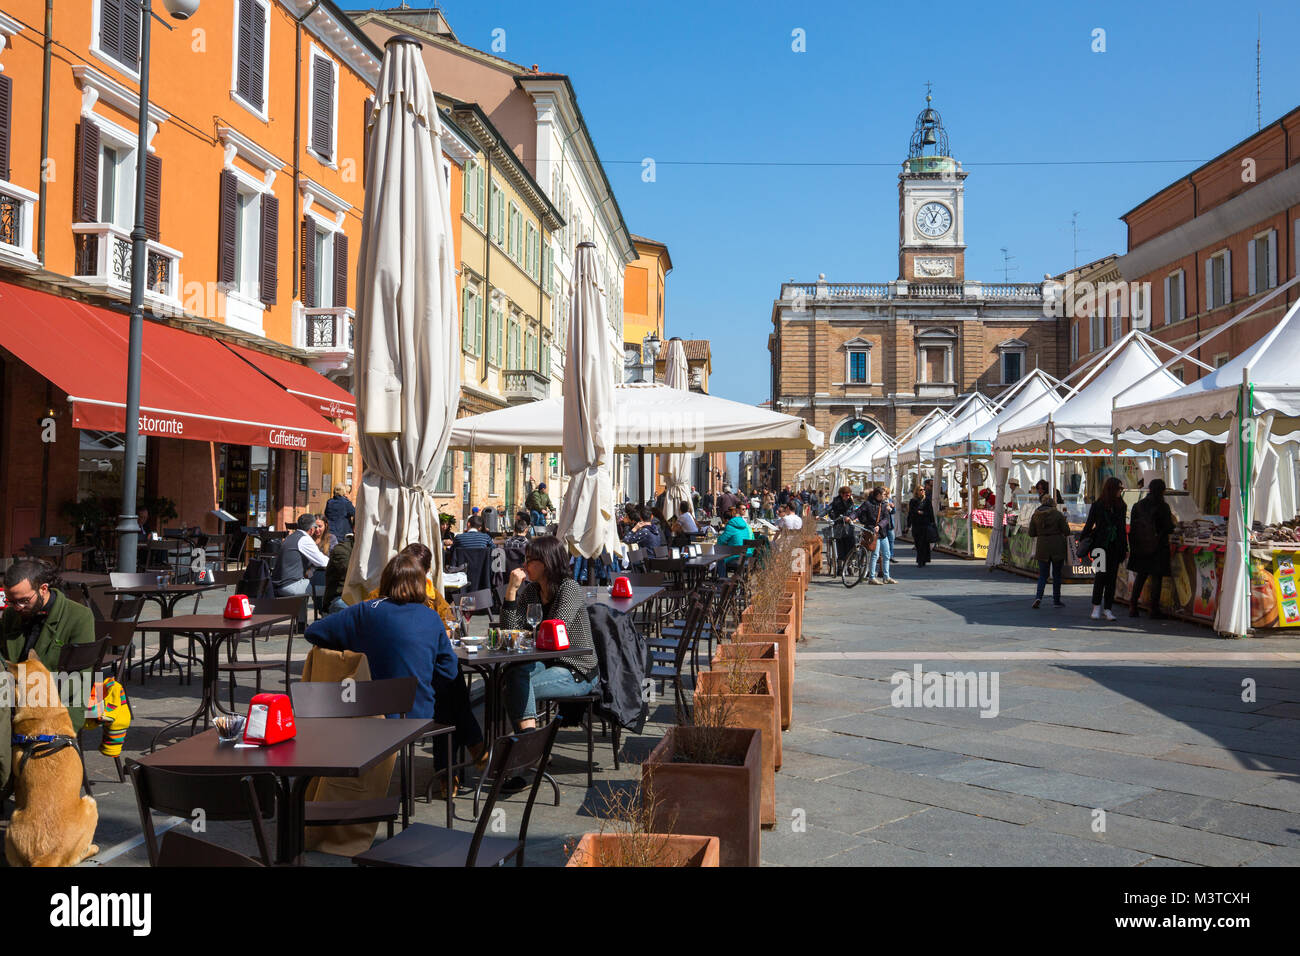 Les personnes bénéficiant du soleil du printemps à cafés et bars sur la Piazza del Popolo à Ravenna Italie Banque D'Images